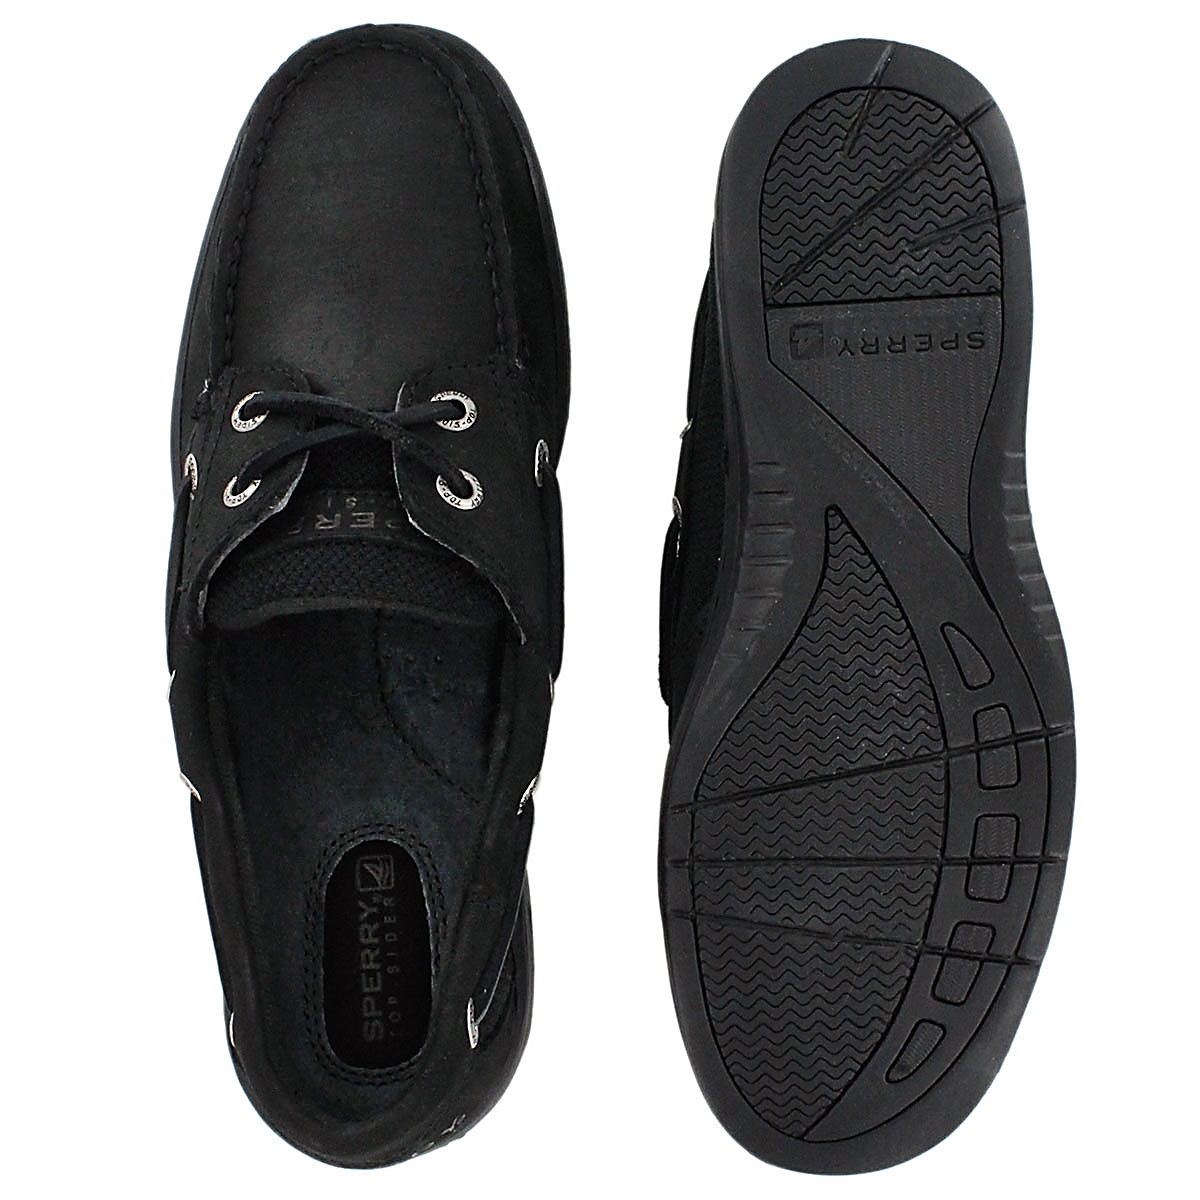 BLUEFISH 2-Eye black boat shoe 